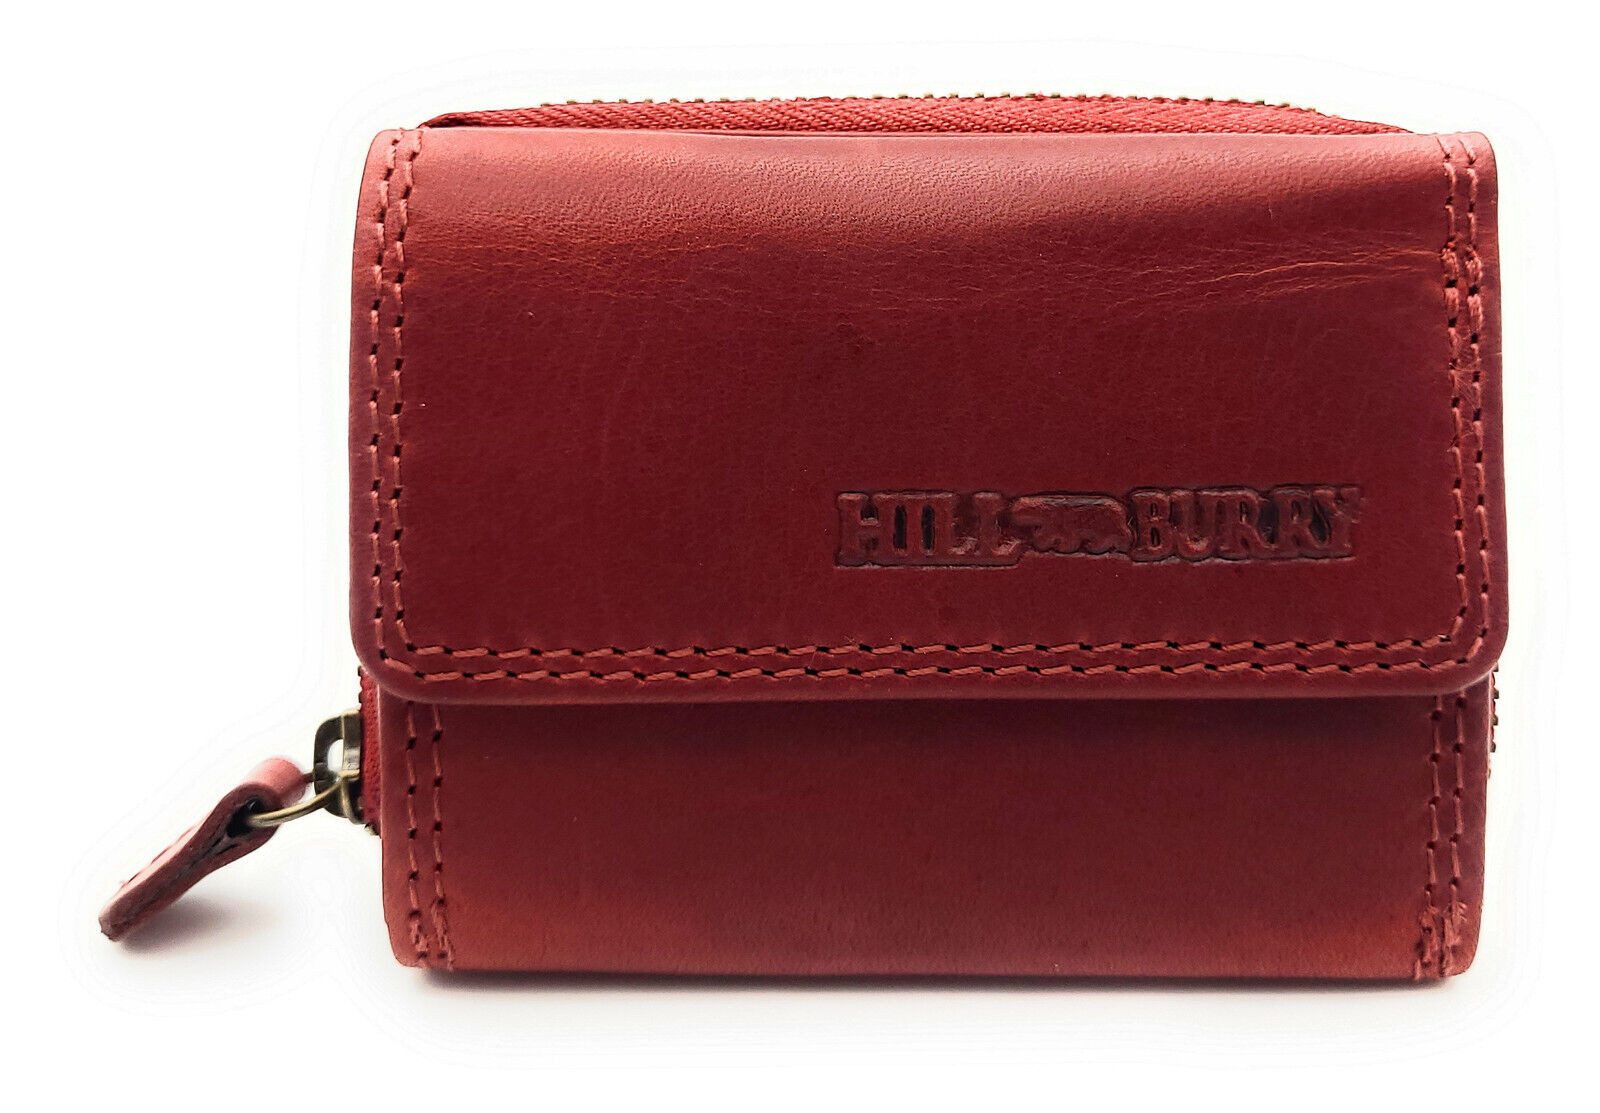 Hill Burry Mini Geldbörse kleines echt Leder Damen Portemonnaie mit RFID Schutz, Damen Geldbeutel für Urlaub, Reise, Alltag, cherry rot